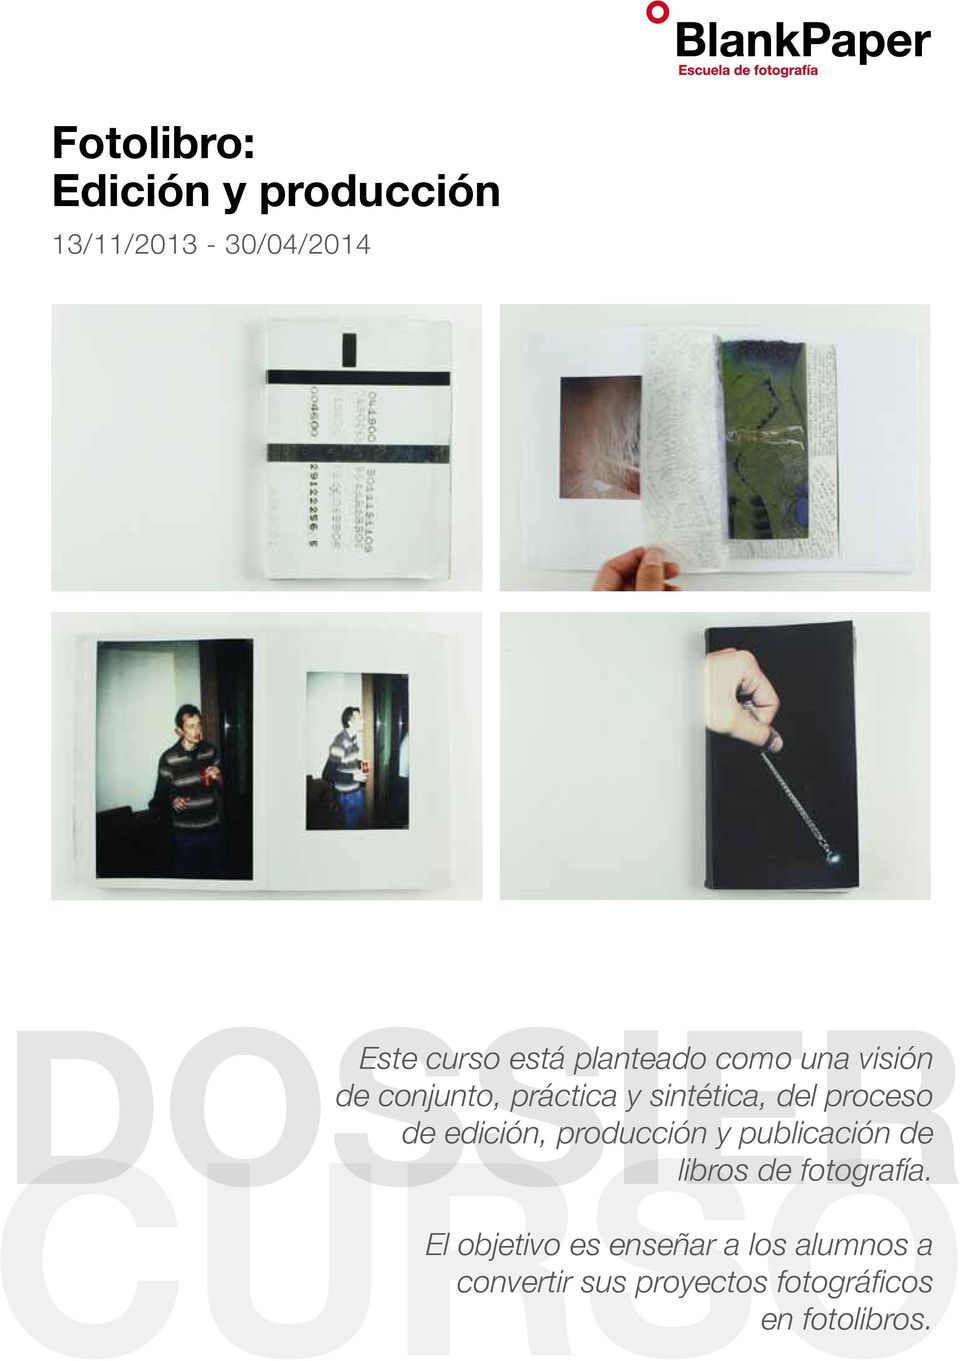 CURSO de edición, producción y publicación de libros de fotografía.